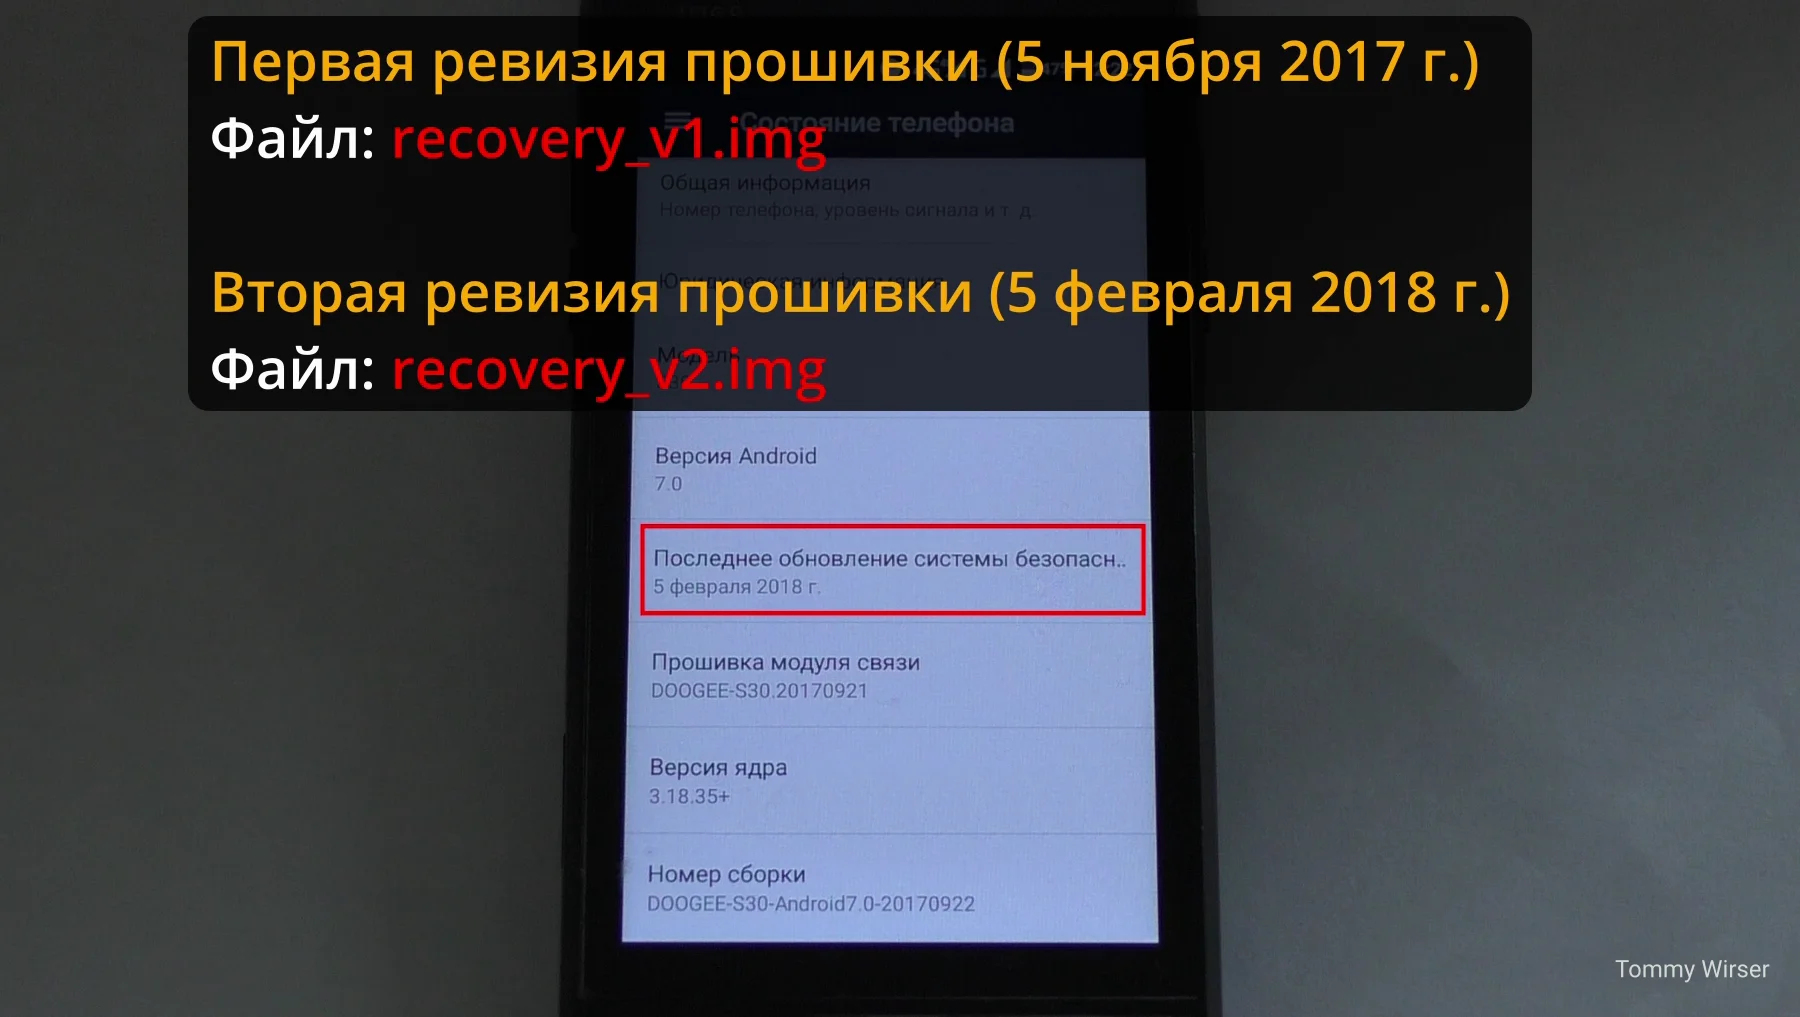  Меню телефона DOOGEE S30, параметр "Последнее обновление системы безопасности" равный "5 февраля 2018г."